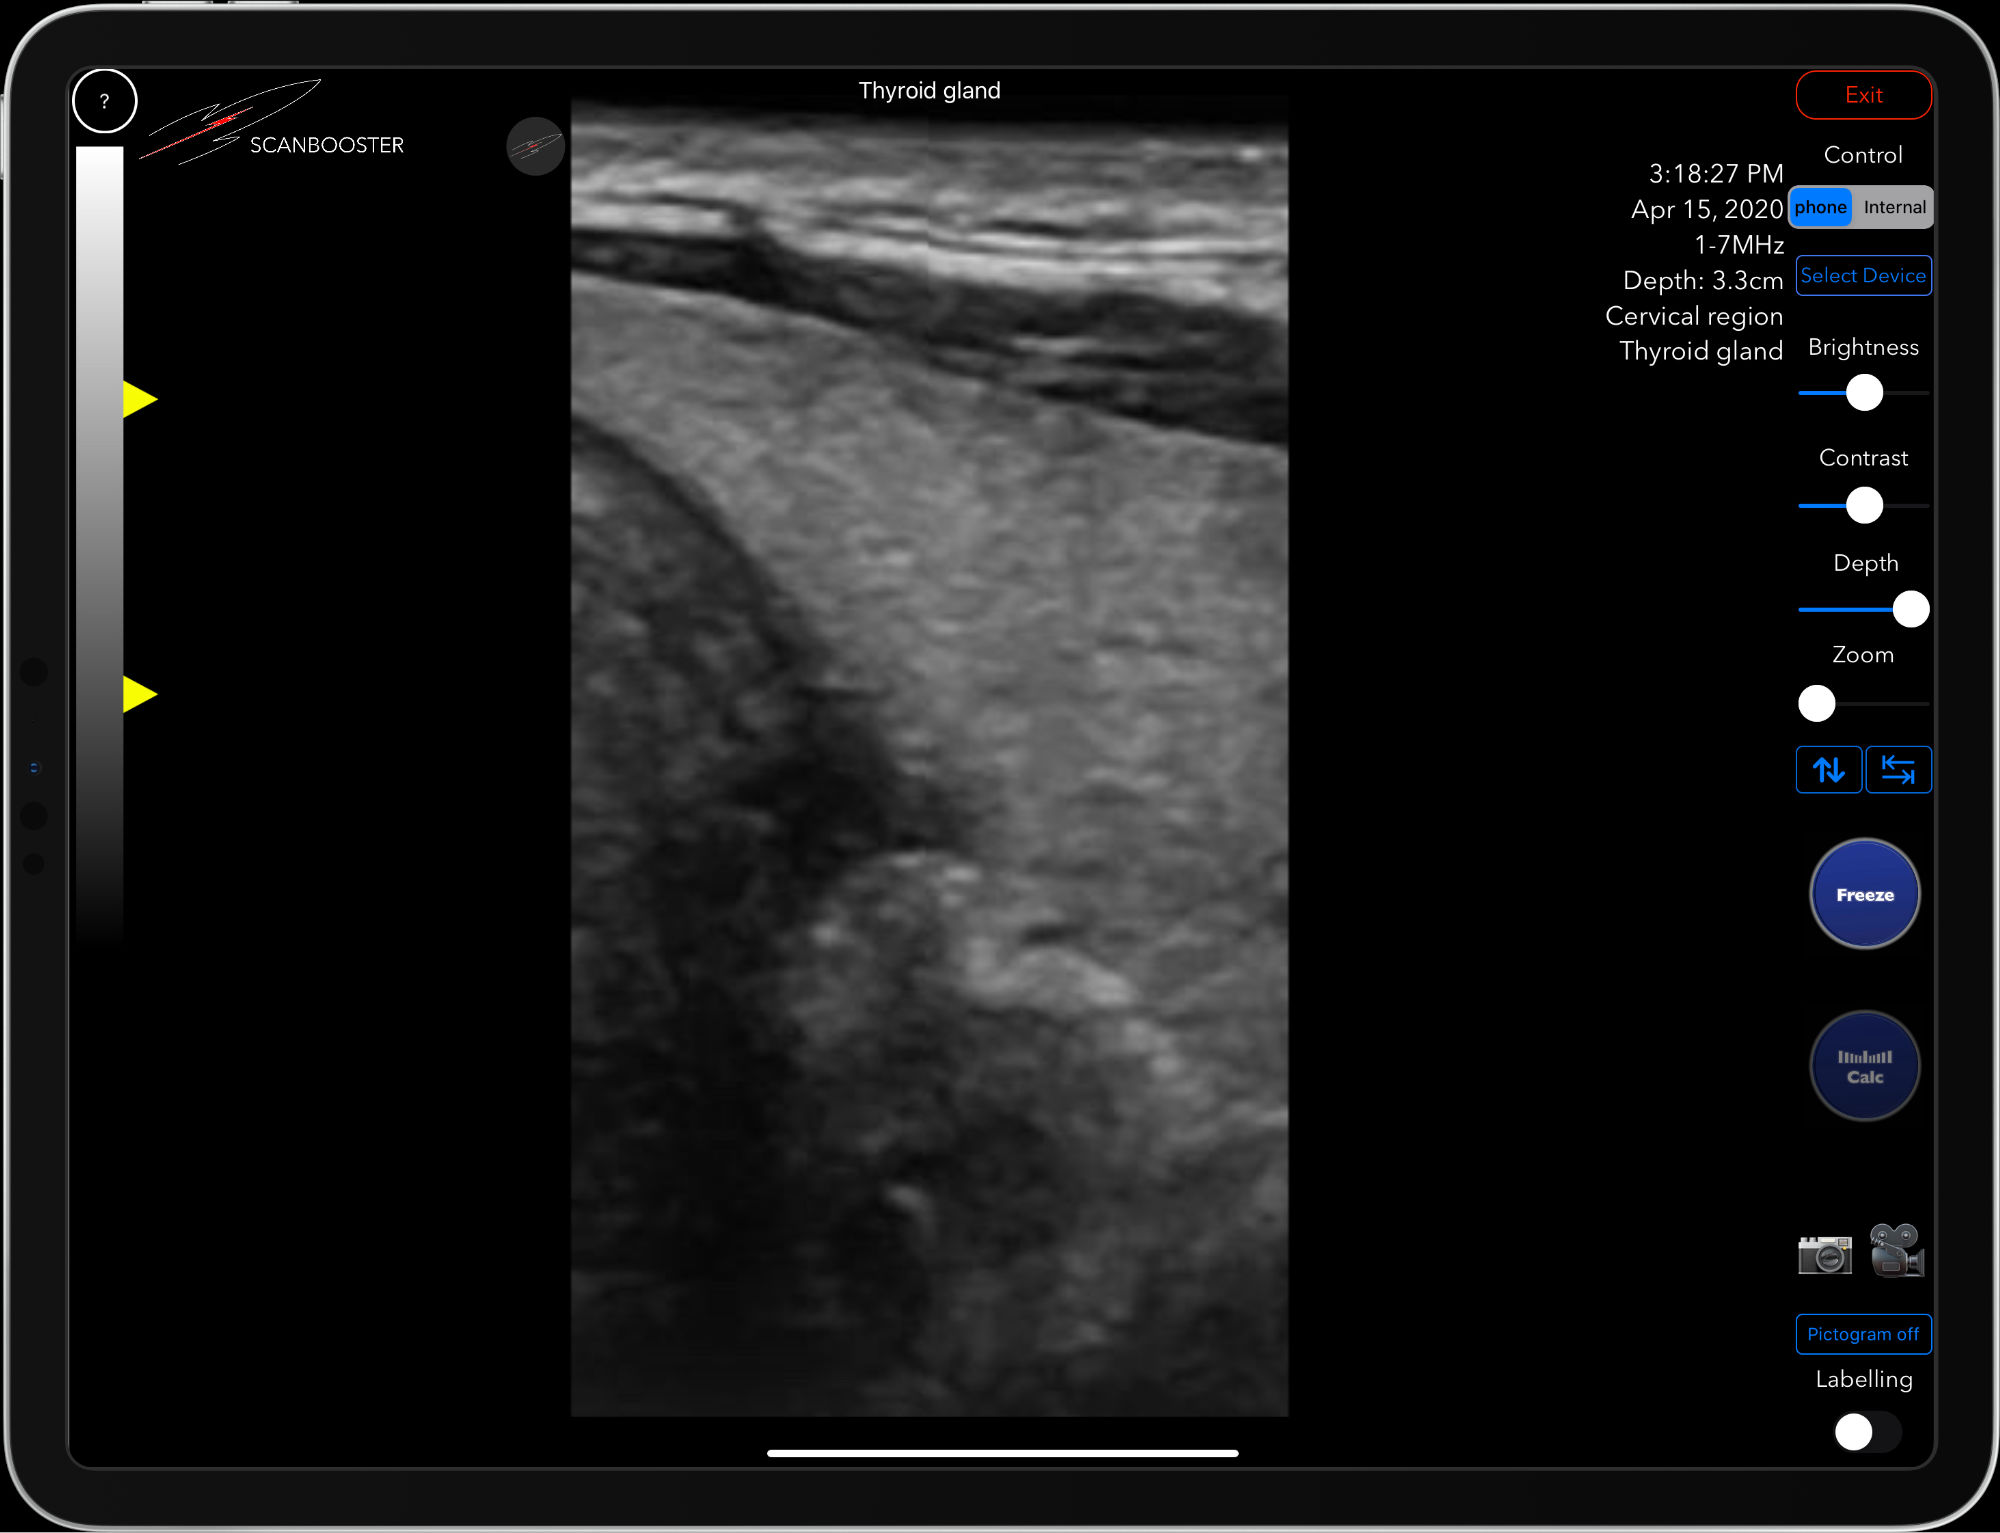 Scanbooster linear ultrasound probe simulation thyroid gland sonography in internal medicine Schilddrüsenultraschall in der inneren Medizin Linearschallkopf